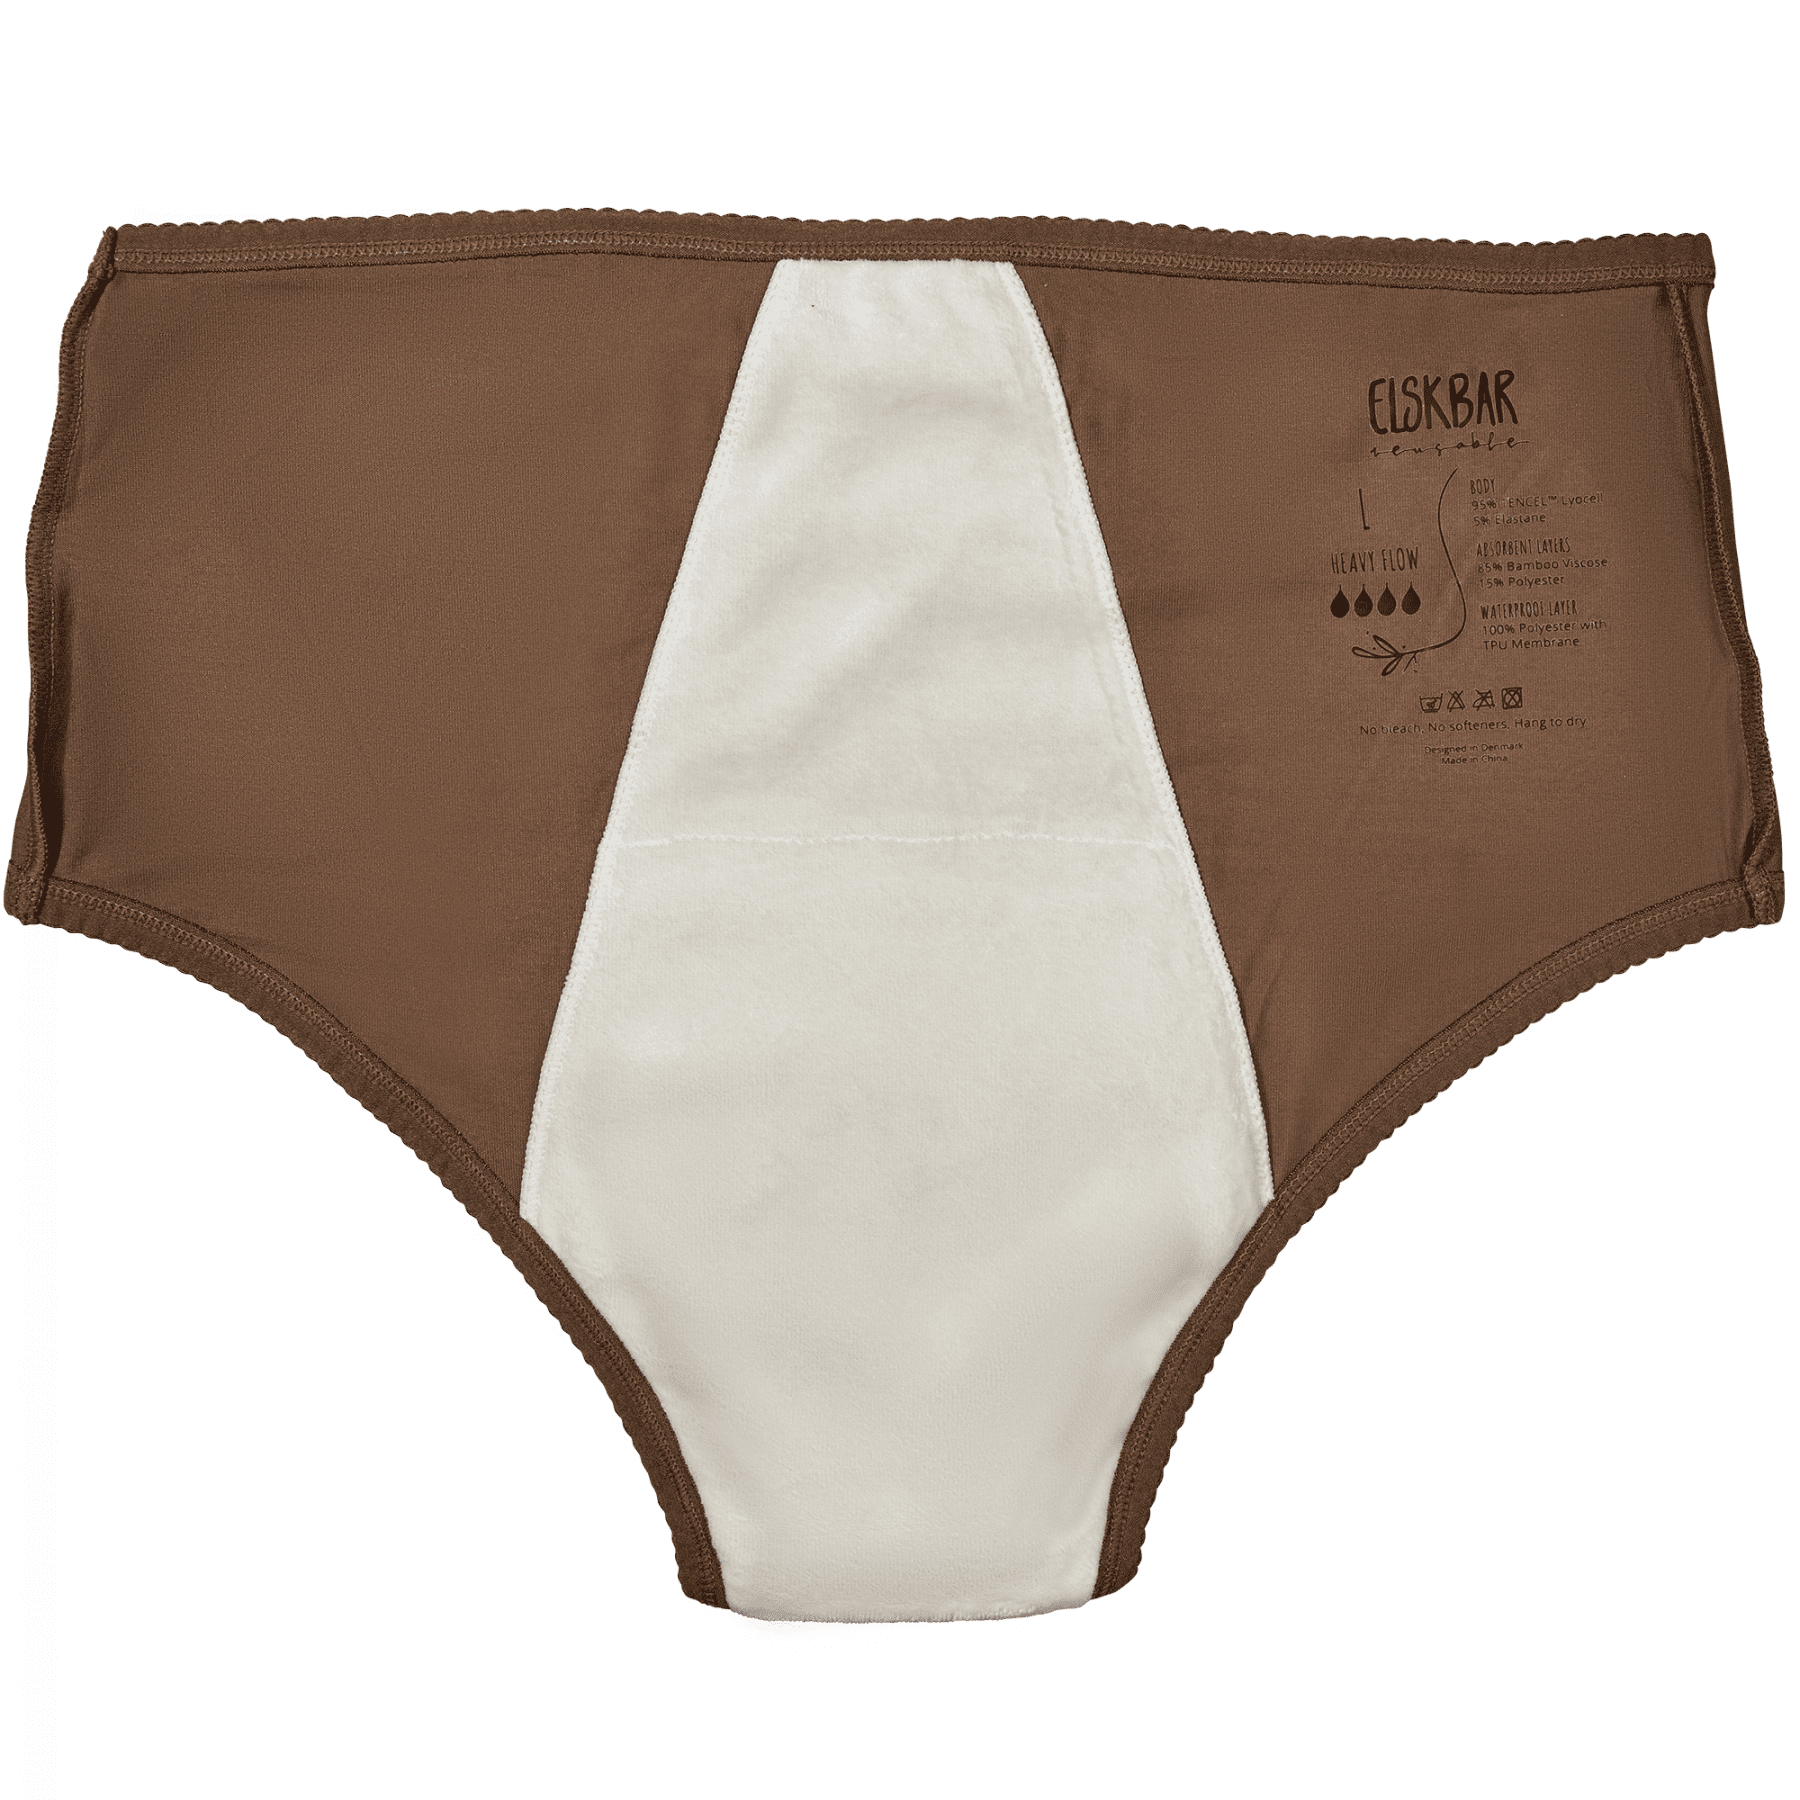 Period Underwear - Heavy Flow Cedar - inside back